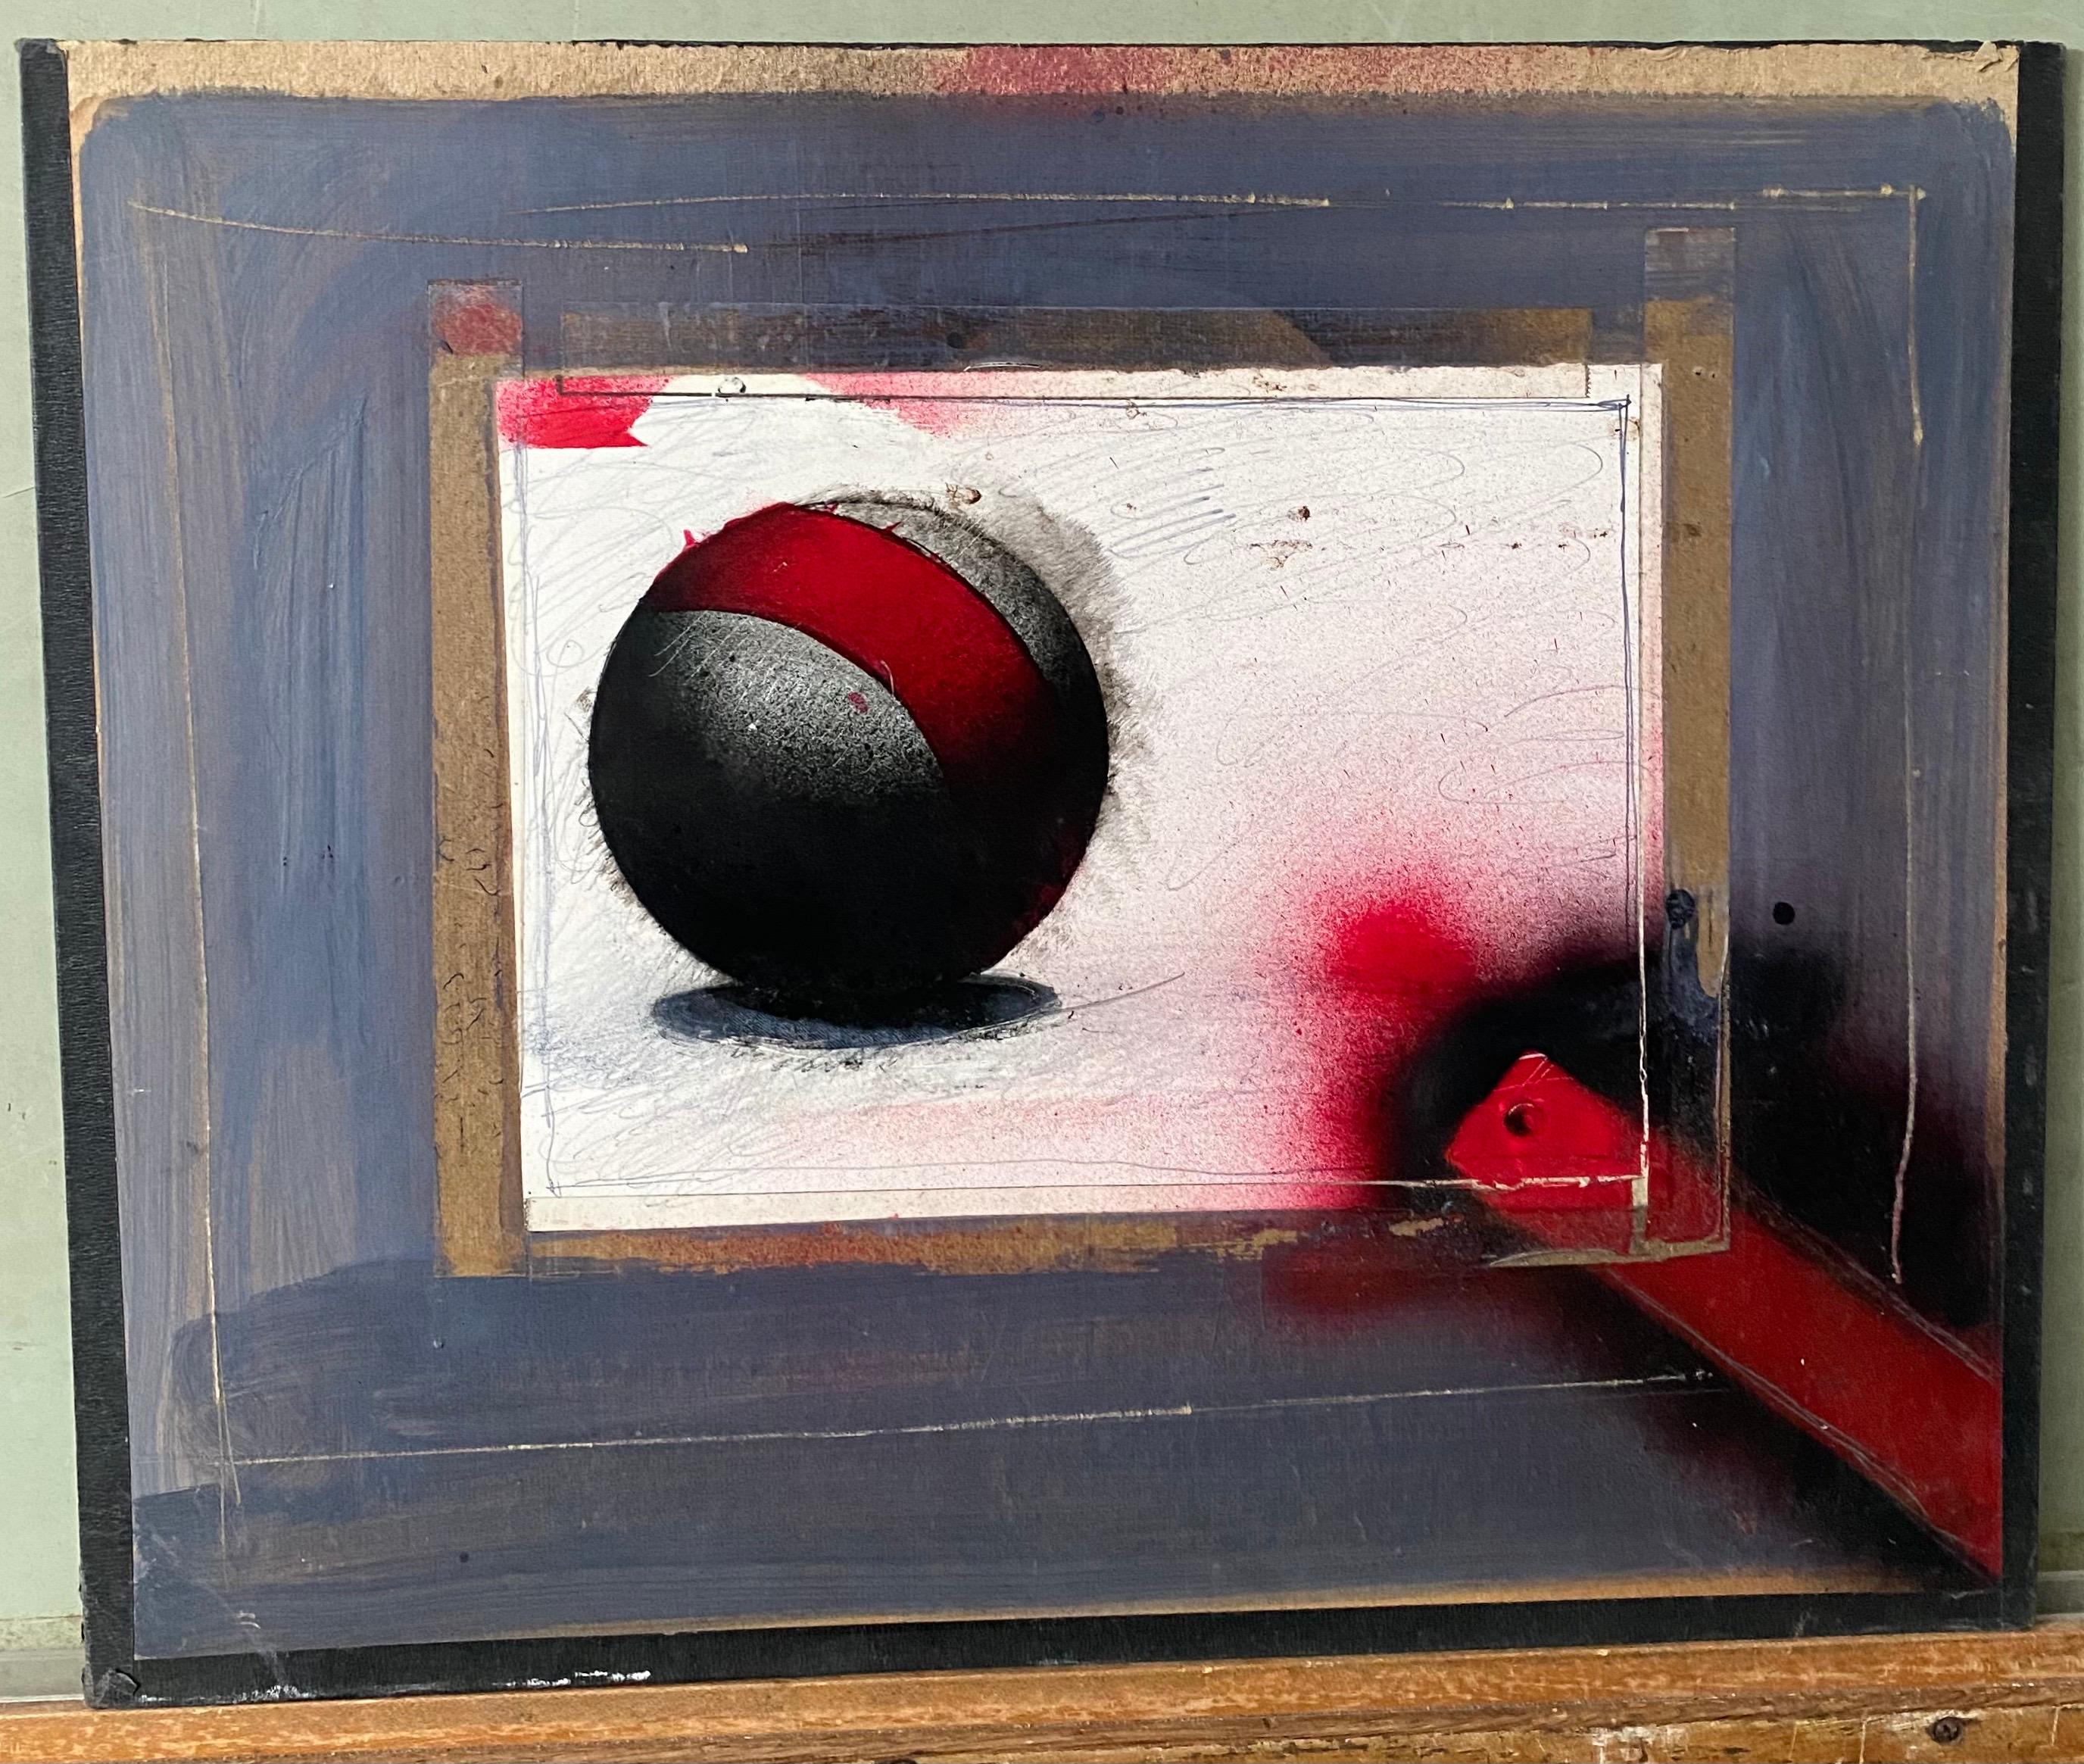 Ölgemälde in Mischtechnik in Collage, futuristische abstrakte Sci-Fi-Kunst (Abstrakter Expressionismus), Painting, von Nick de Angelis